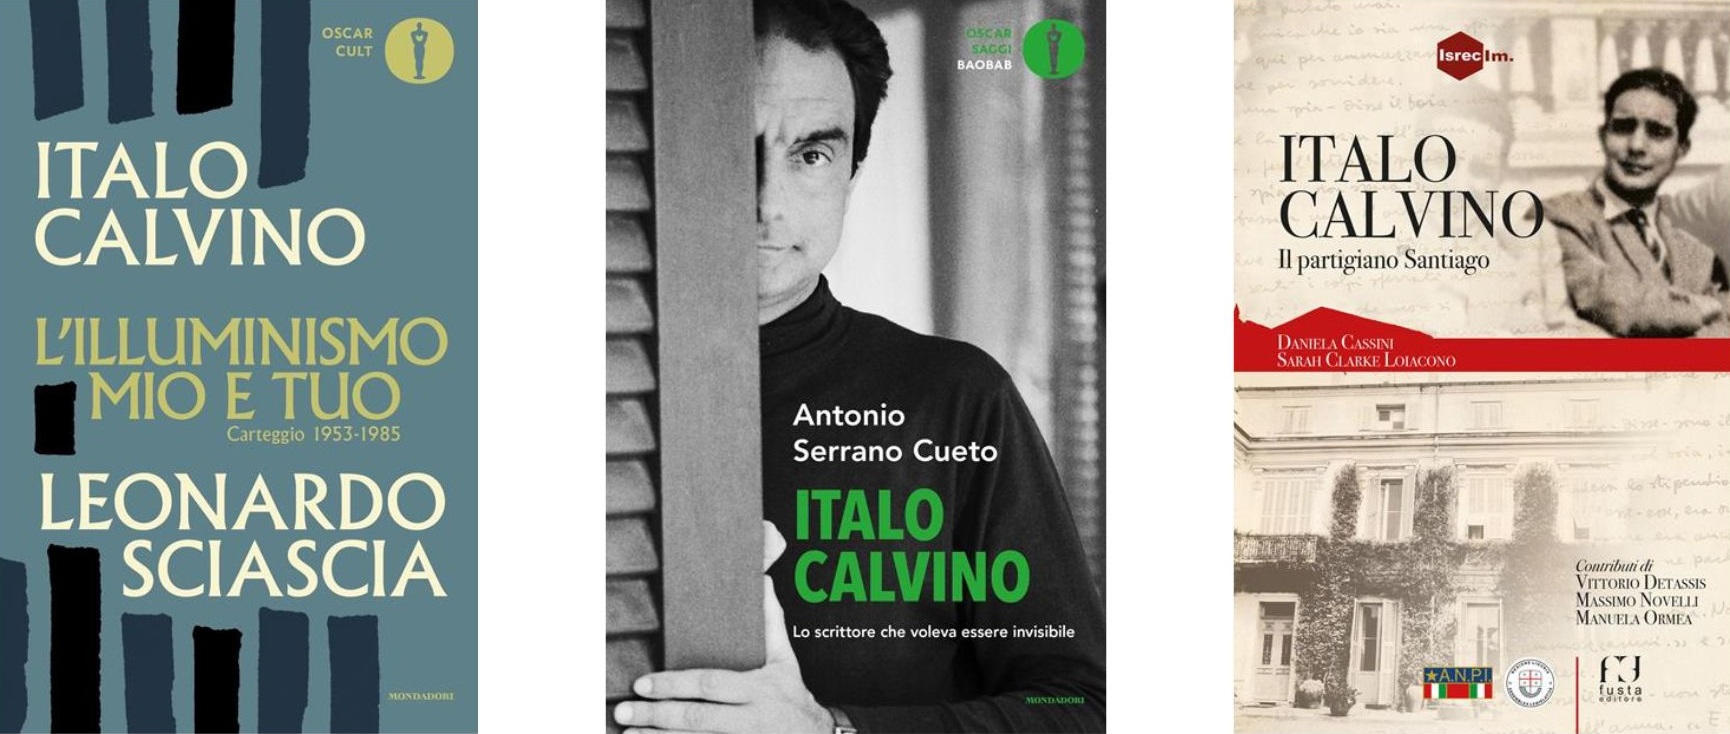 La copertina di tre libri su Italo Calvino pubblicati nel centenario dalla sua nascita